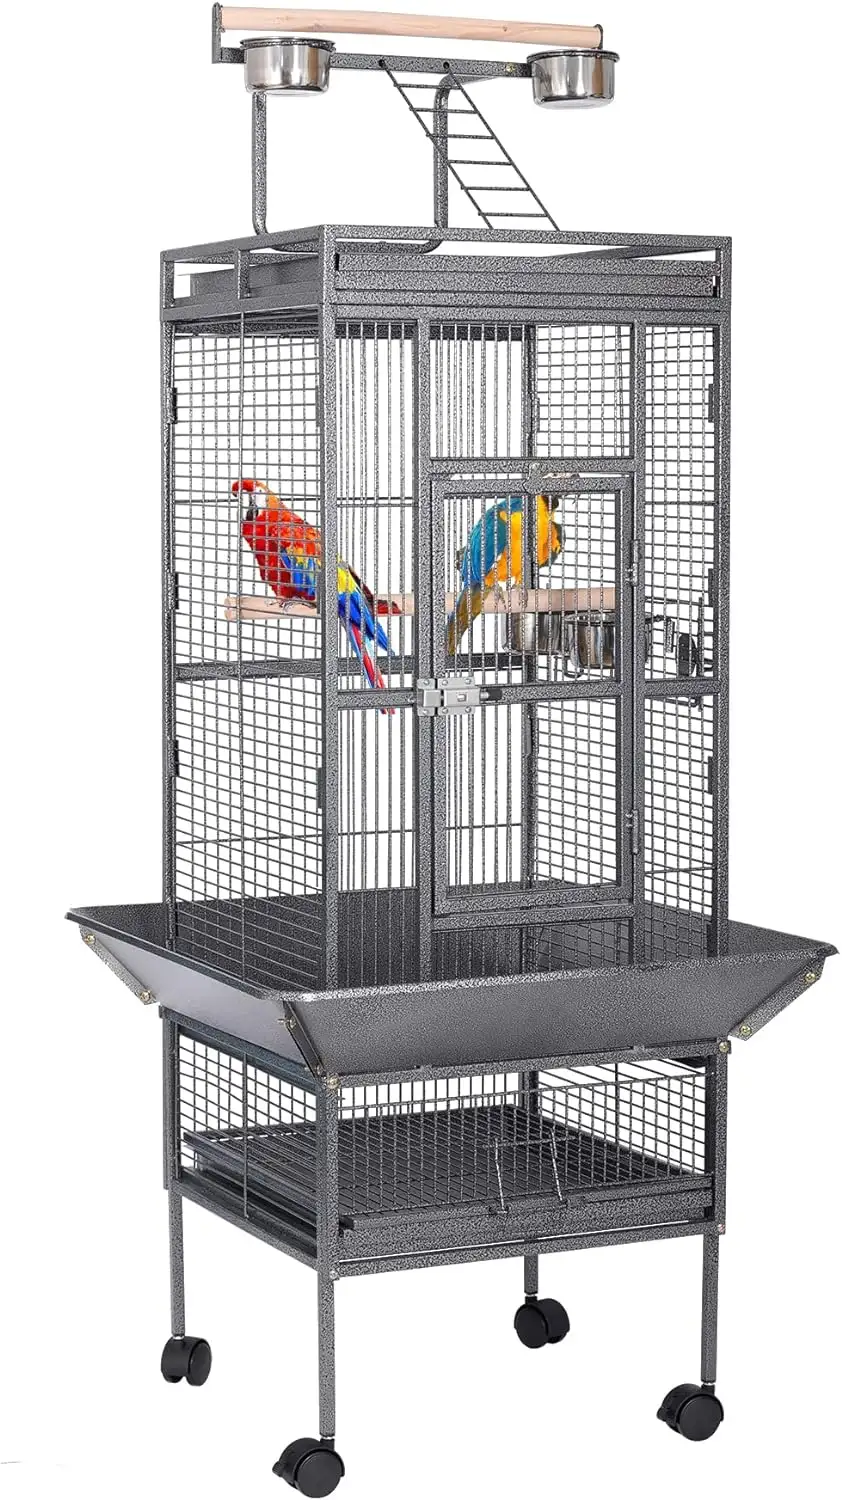 Toptan 68 inç lüks tasarımlar siyah çelik metal demir aviary kanarya budgie finch pet büyük papağan aşk kuş kafesi satılık